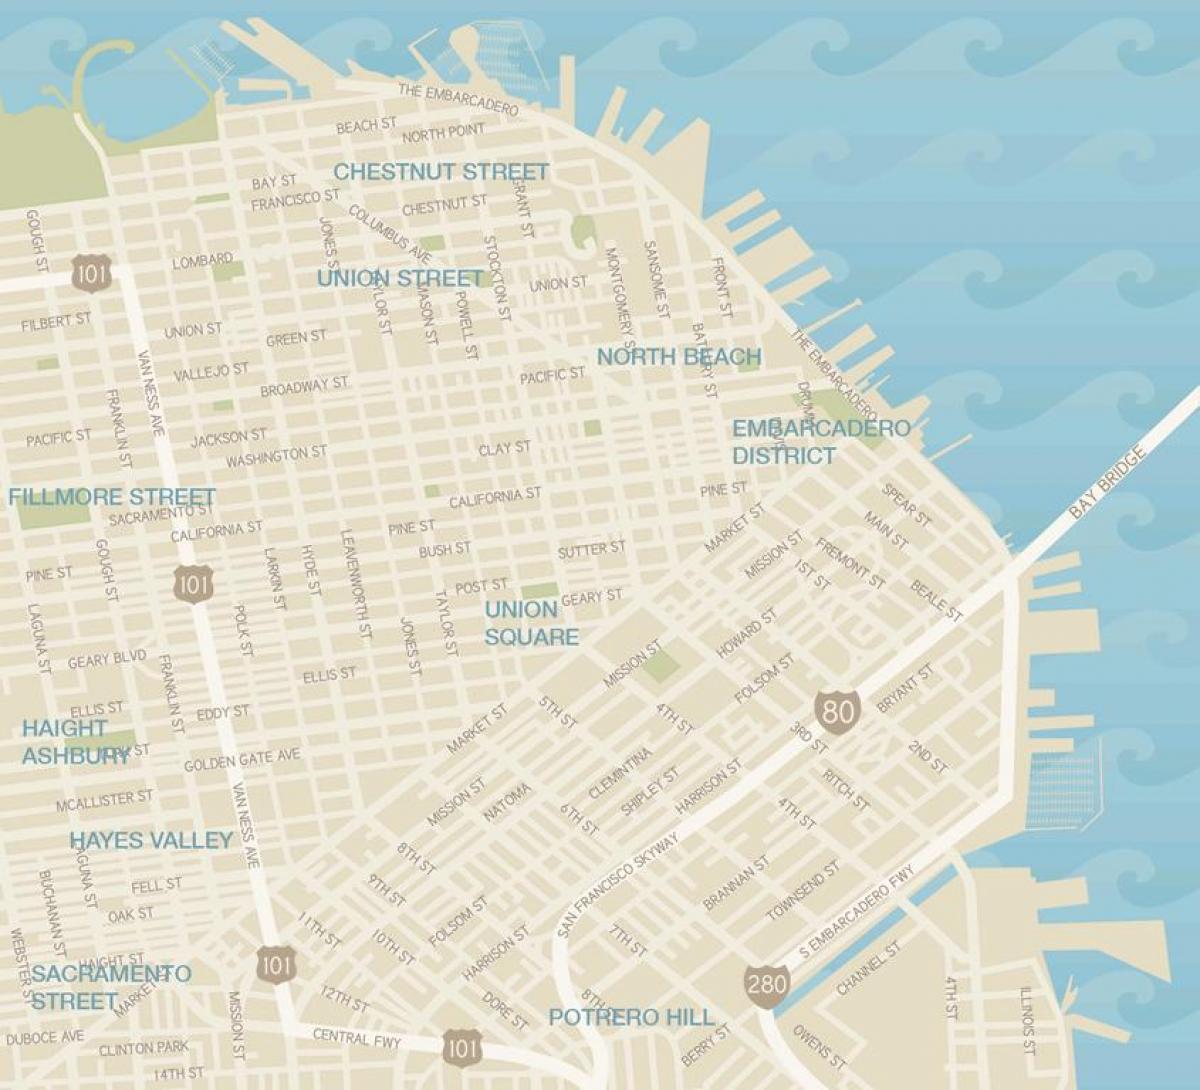 Kort over San Francisco garment district